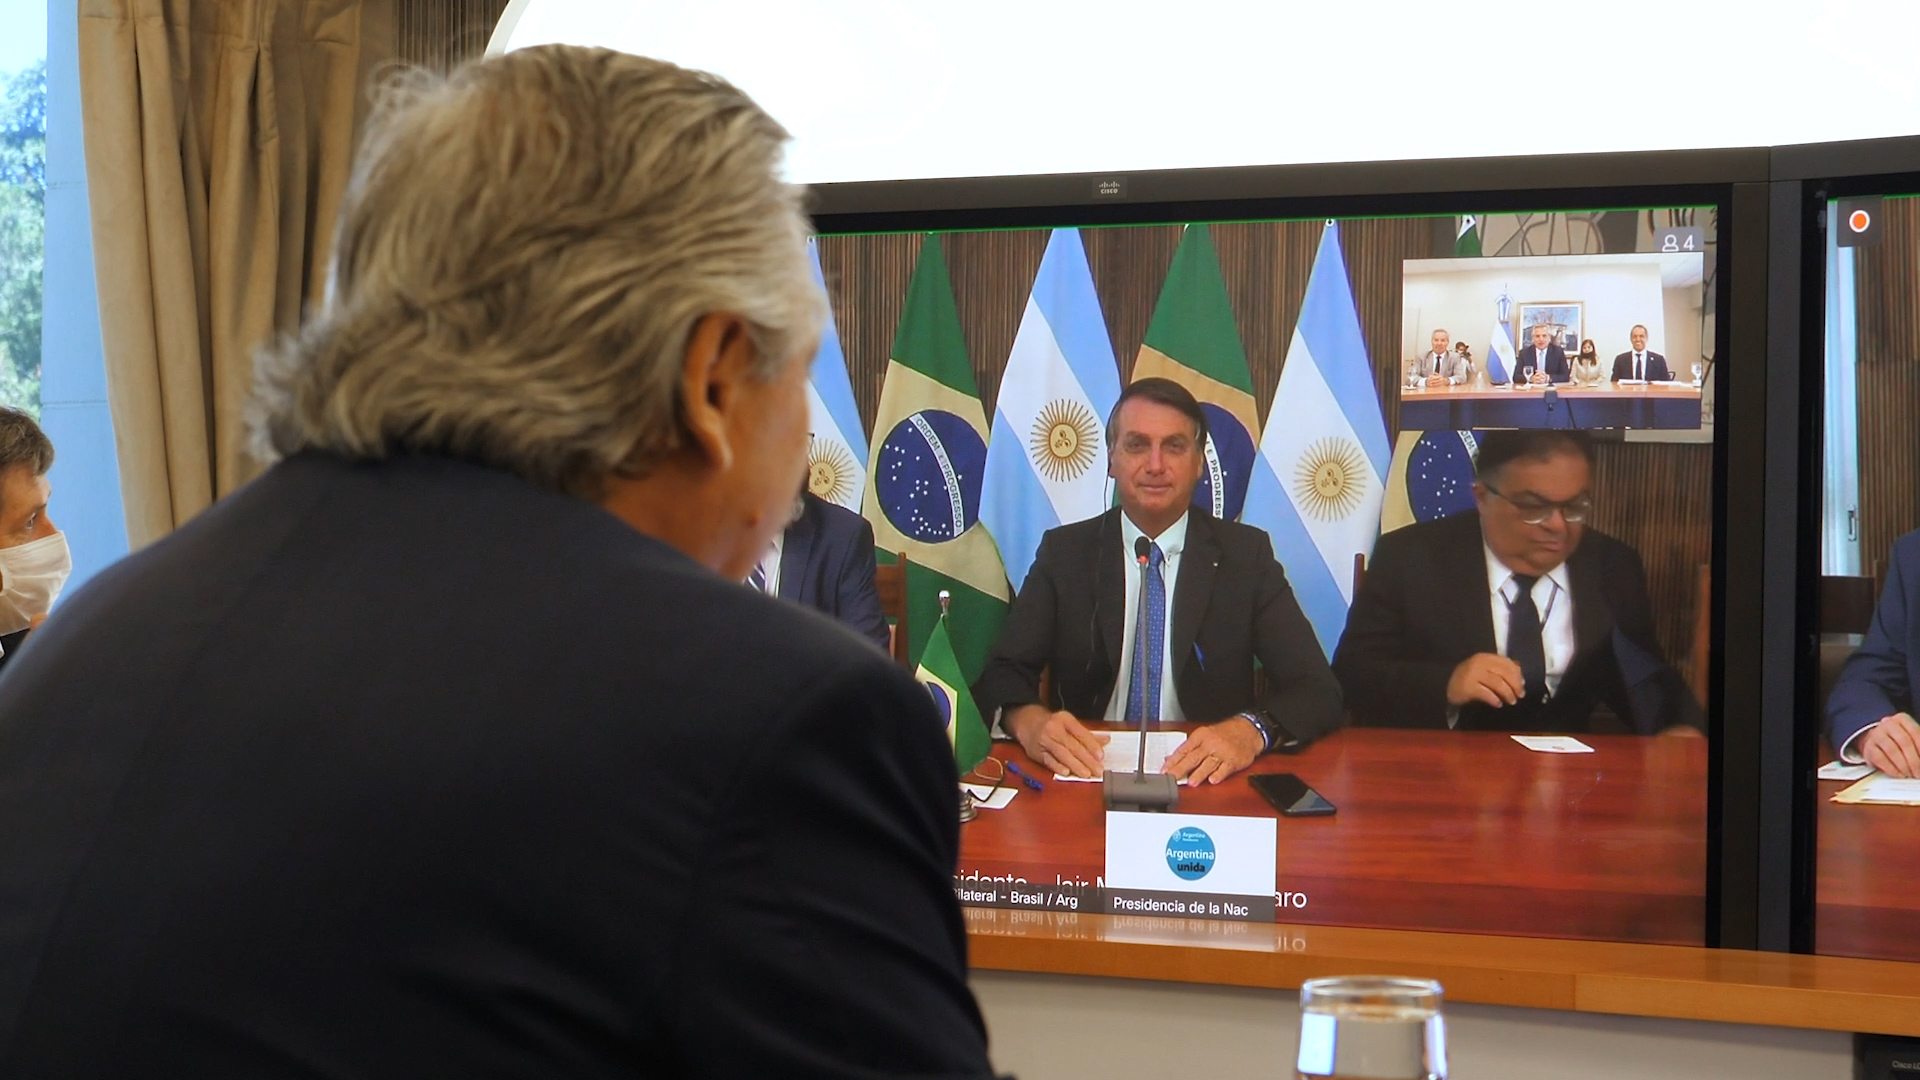 Cara a cara pero de forma virtual: el encuentro de Alberto Fernández con Jair Bolsonaro en la cumbre del Mercosur 